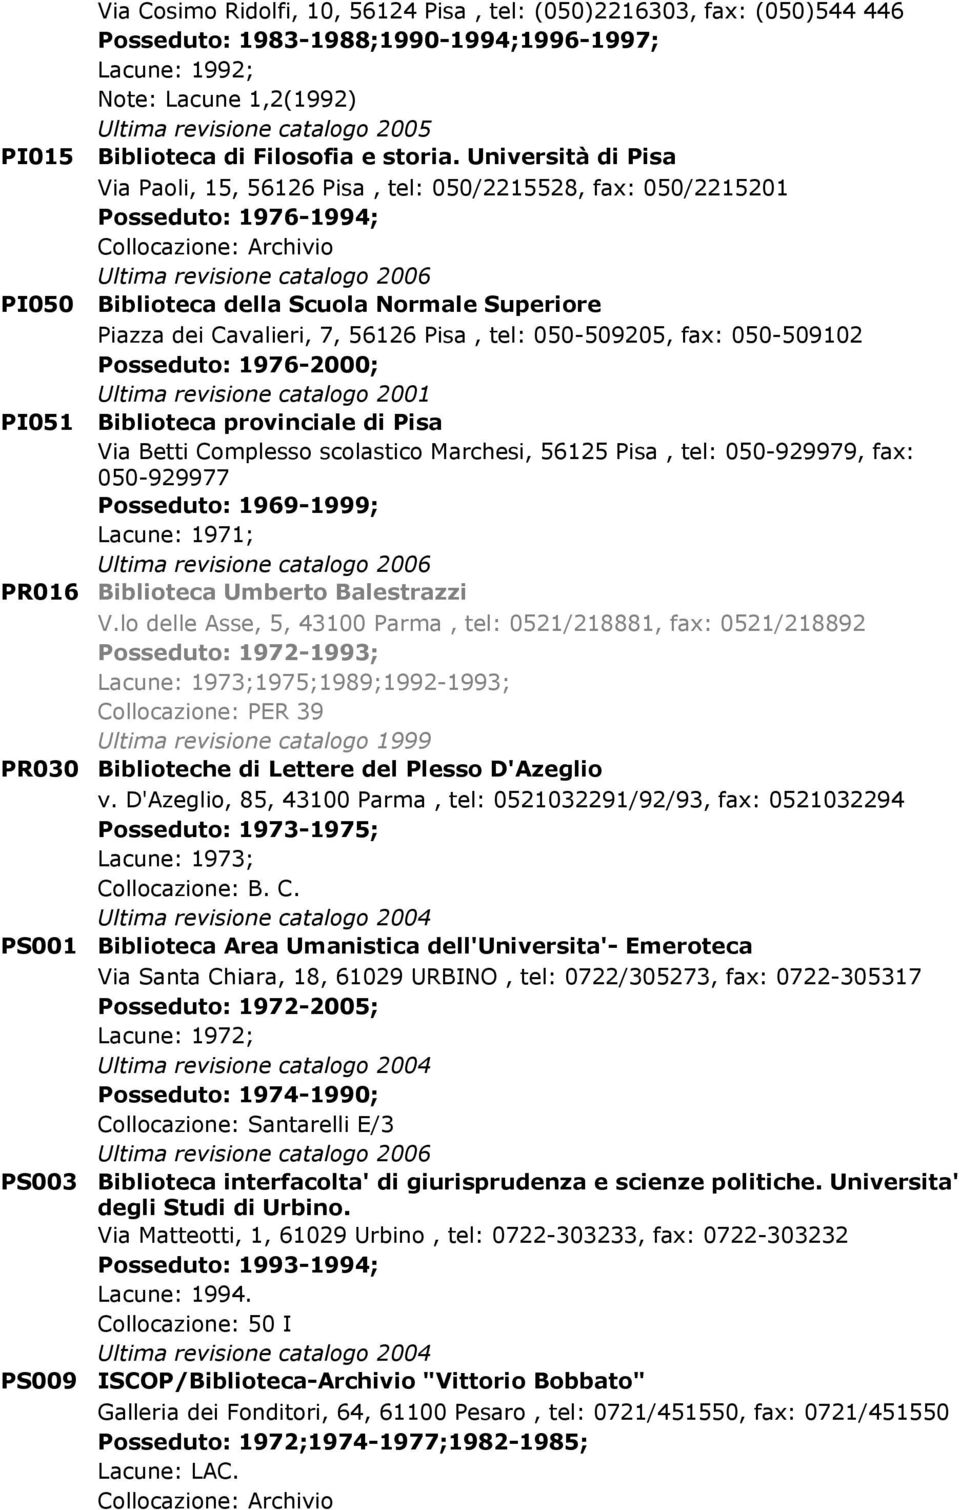 56126 Pisa, tel: 050-509205, fax: 050-509102 Posseduto: 1976-2000; Ultima revisione catalogo 2001 PI051 Biblioteca provinciale di Pisa Via Betti Complesso scolastico Marchesi, 56125 Pisa, tel: